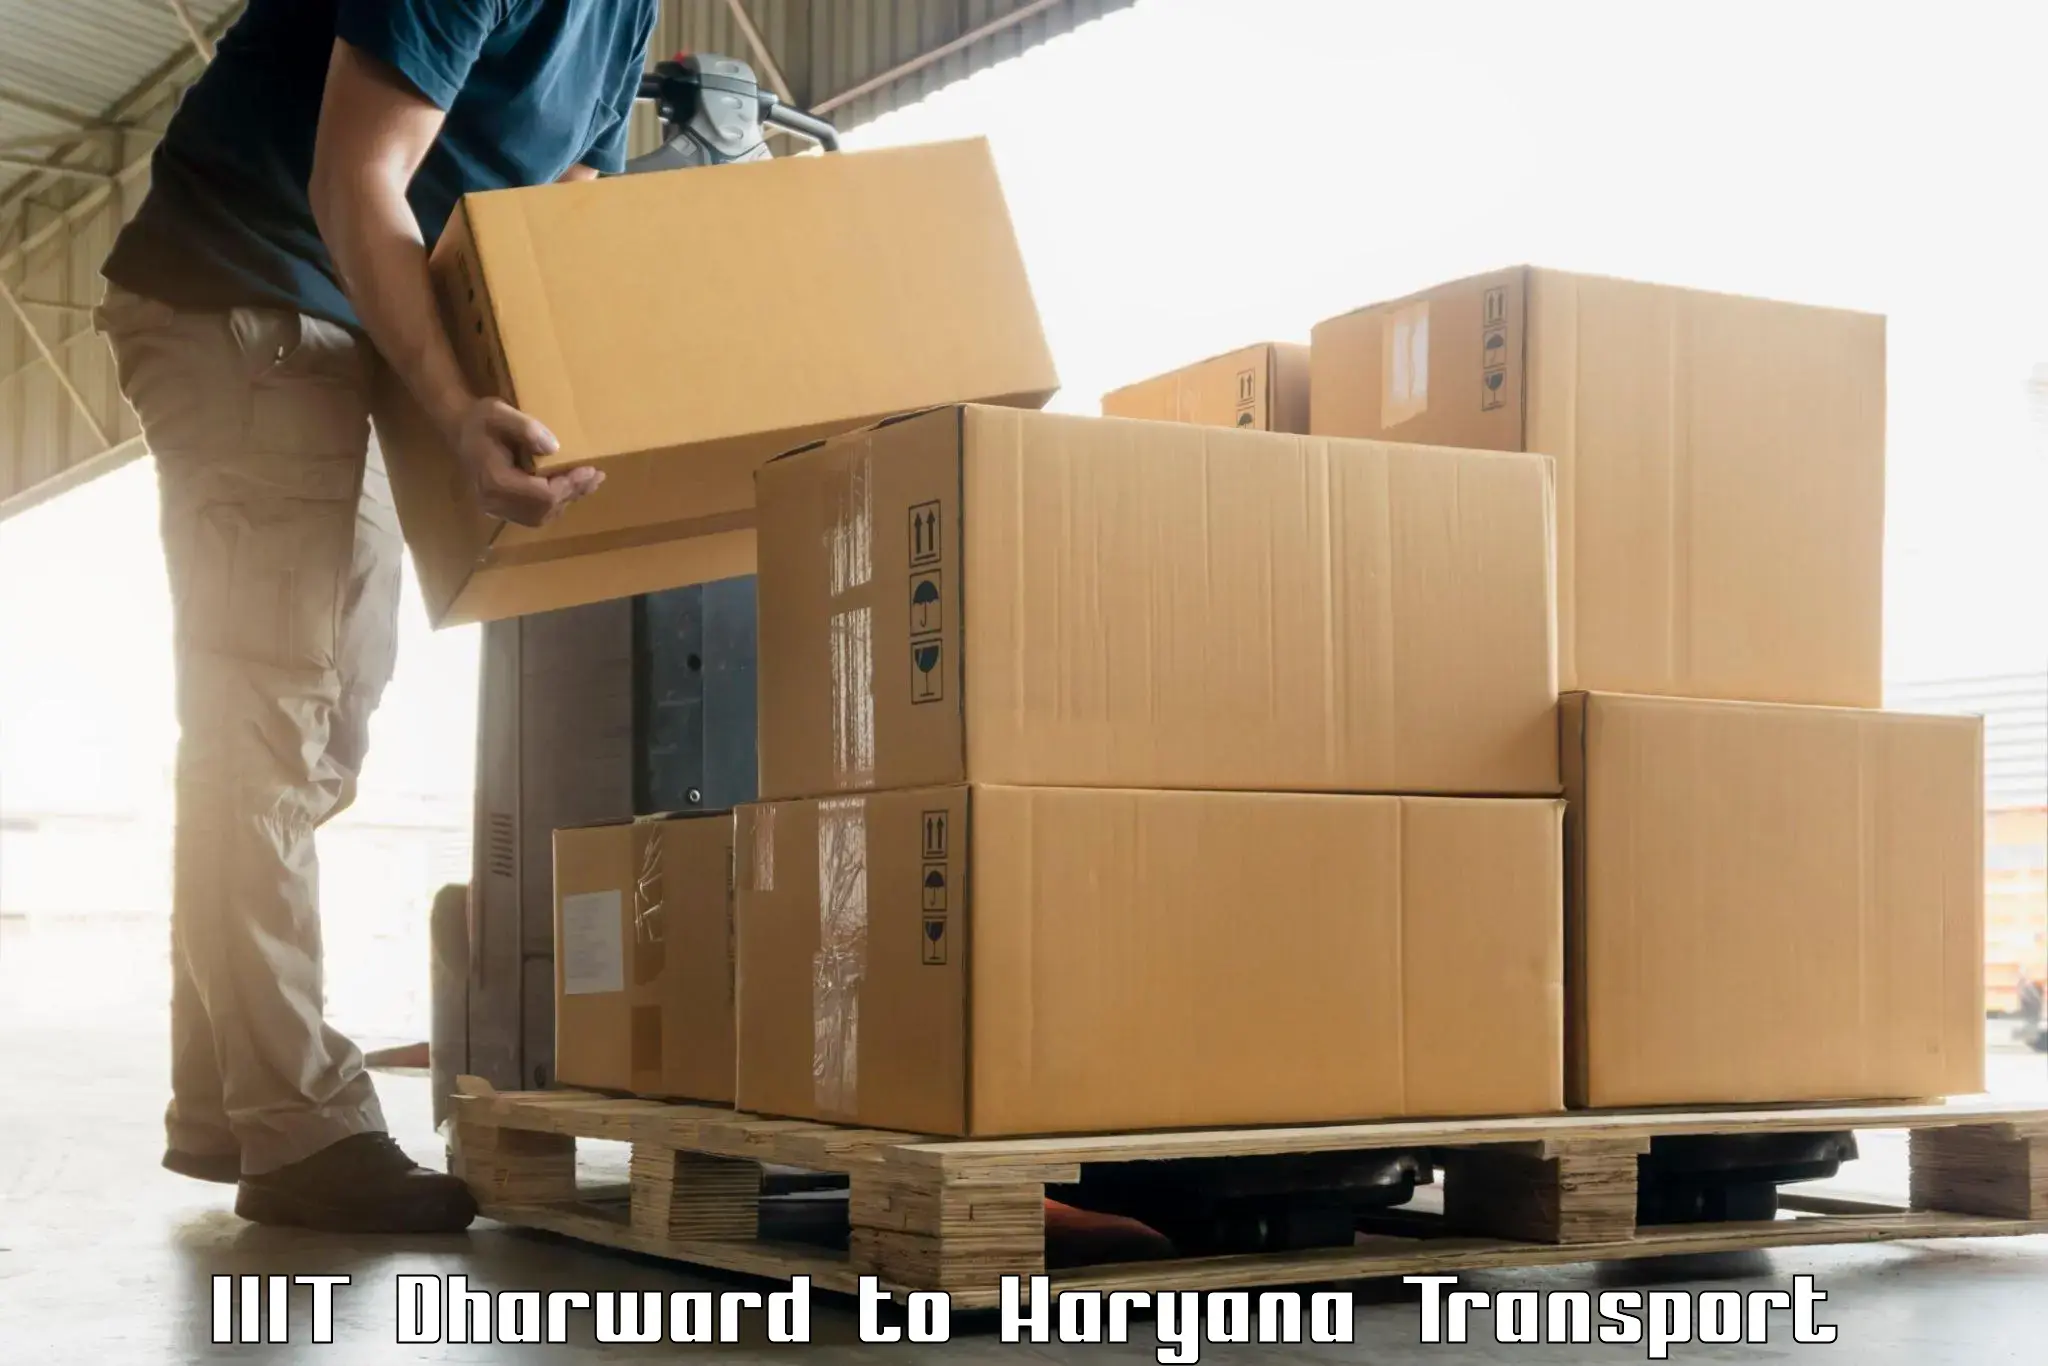 Shipping partner IIIT Dharward to Haryana